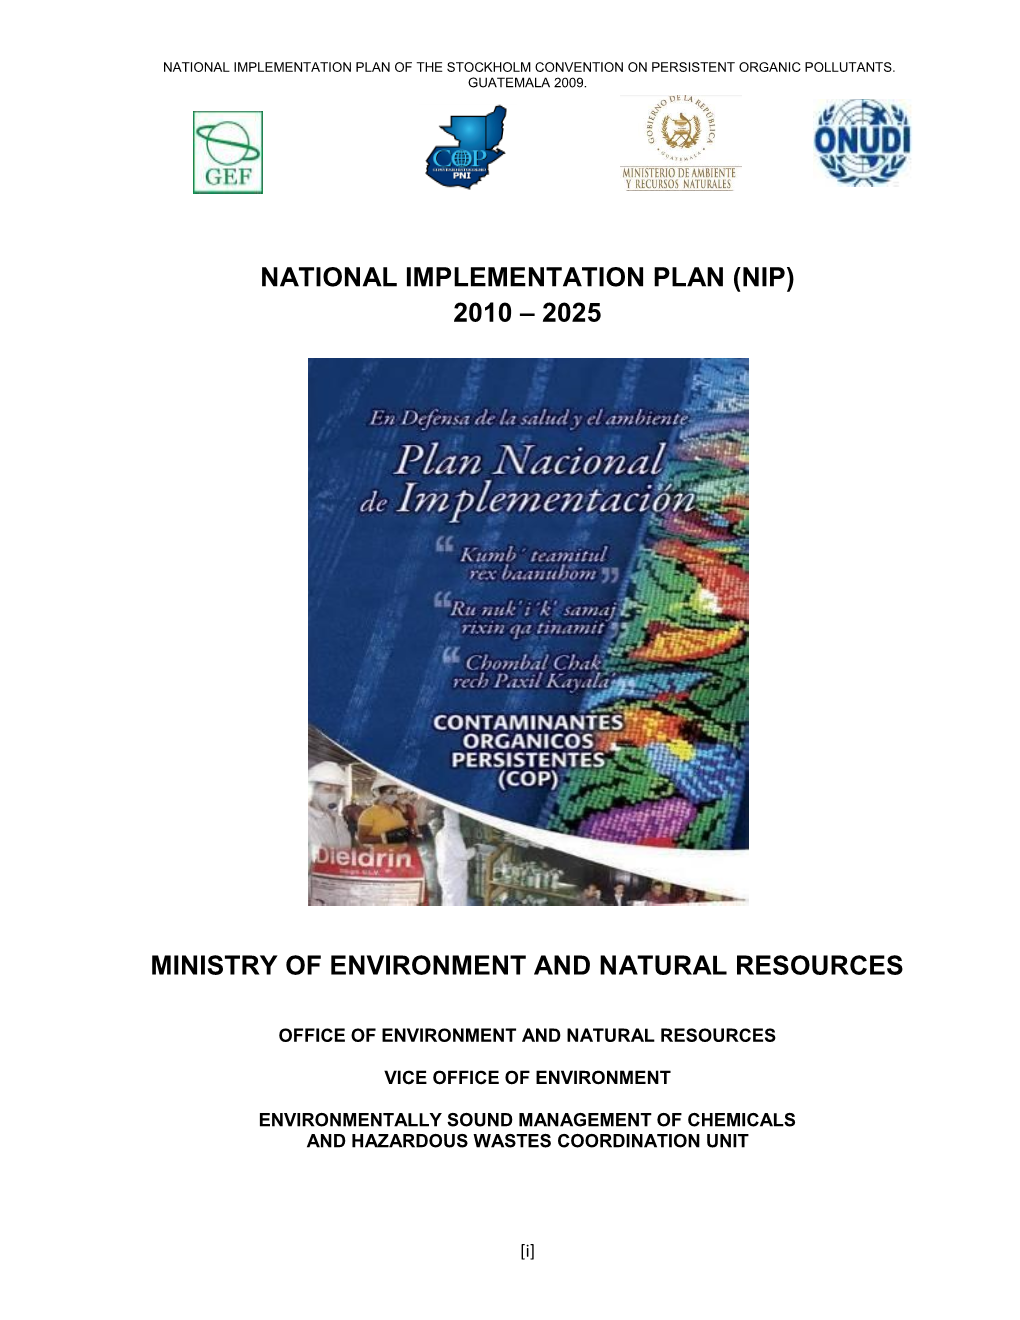 National Implementation Plan (Nip) 2010 – 2025